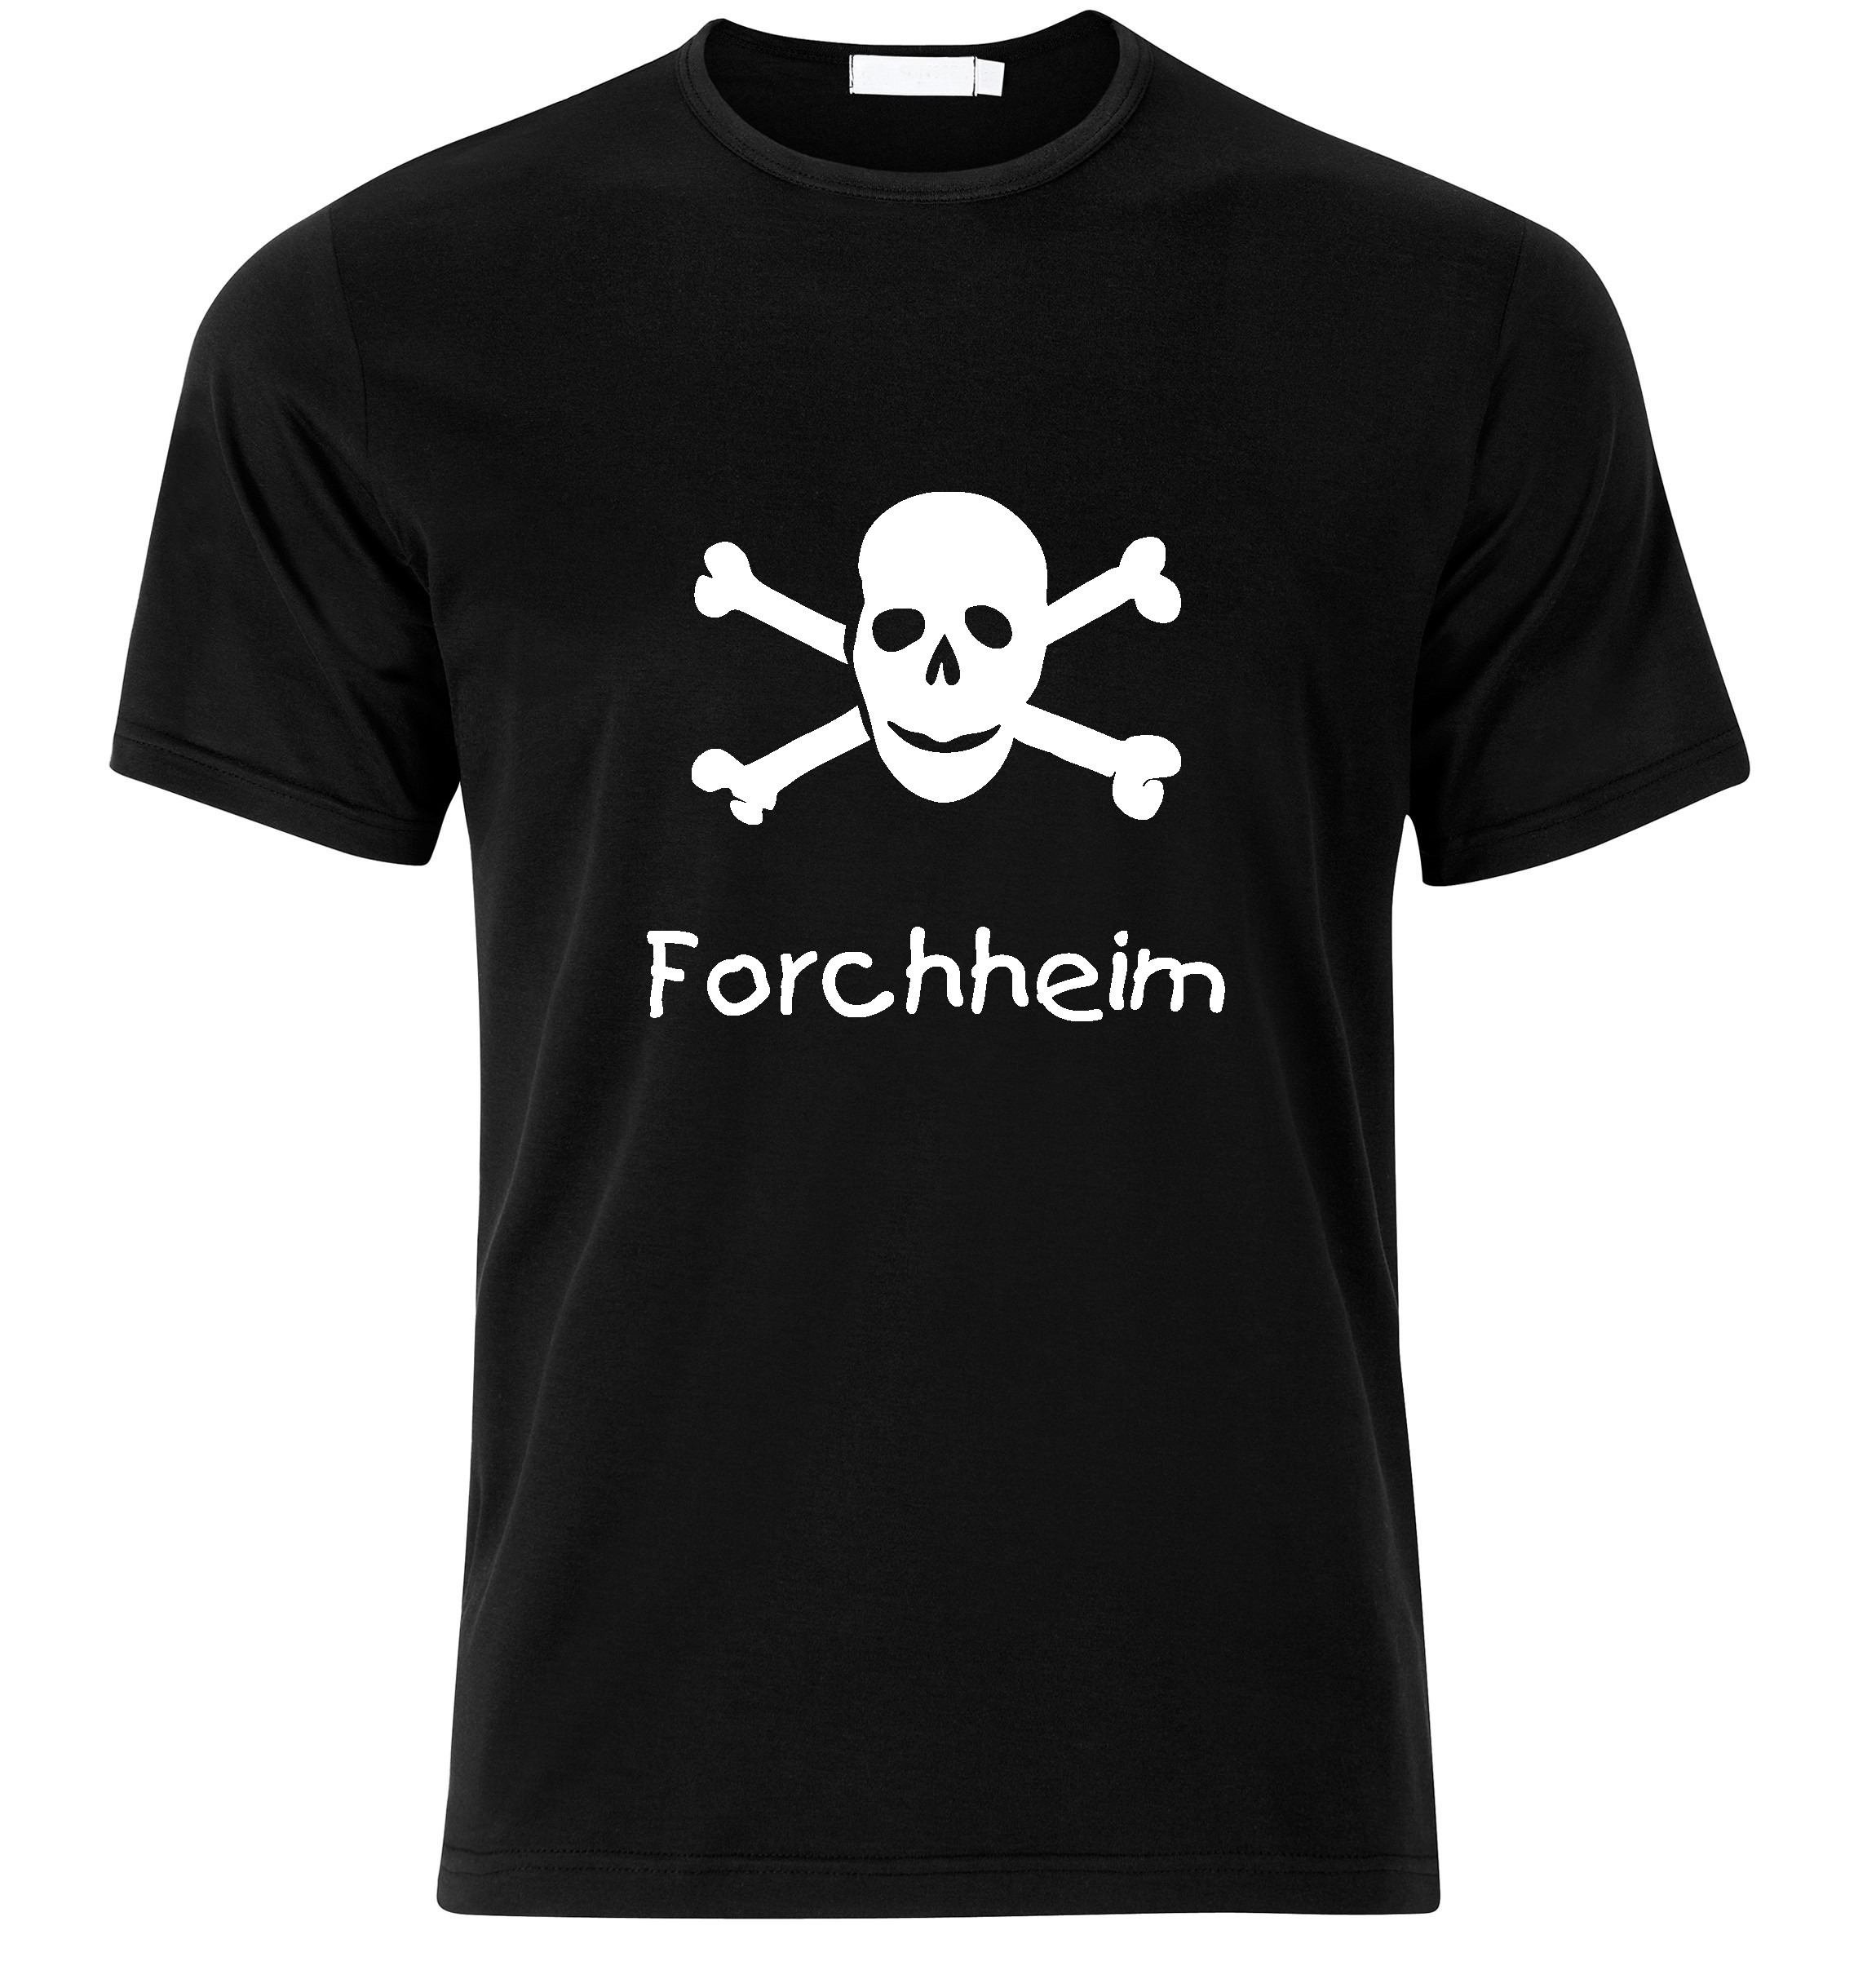 T-Shirt Forchheim Jolly Roger, Totenkopf